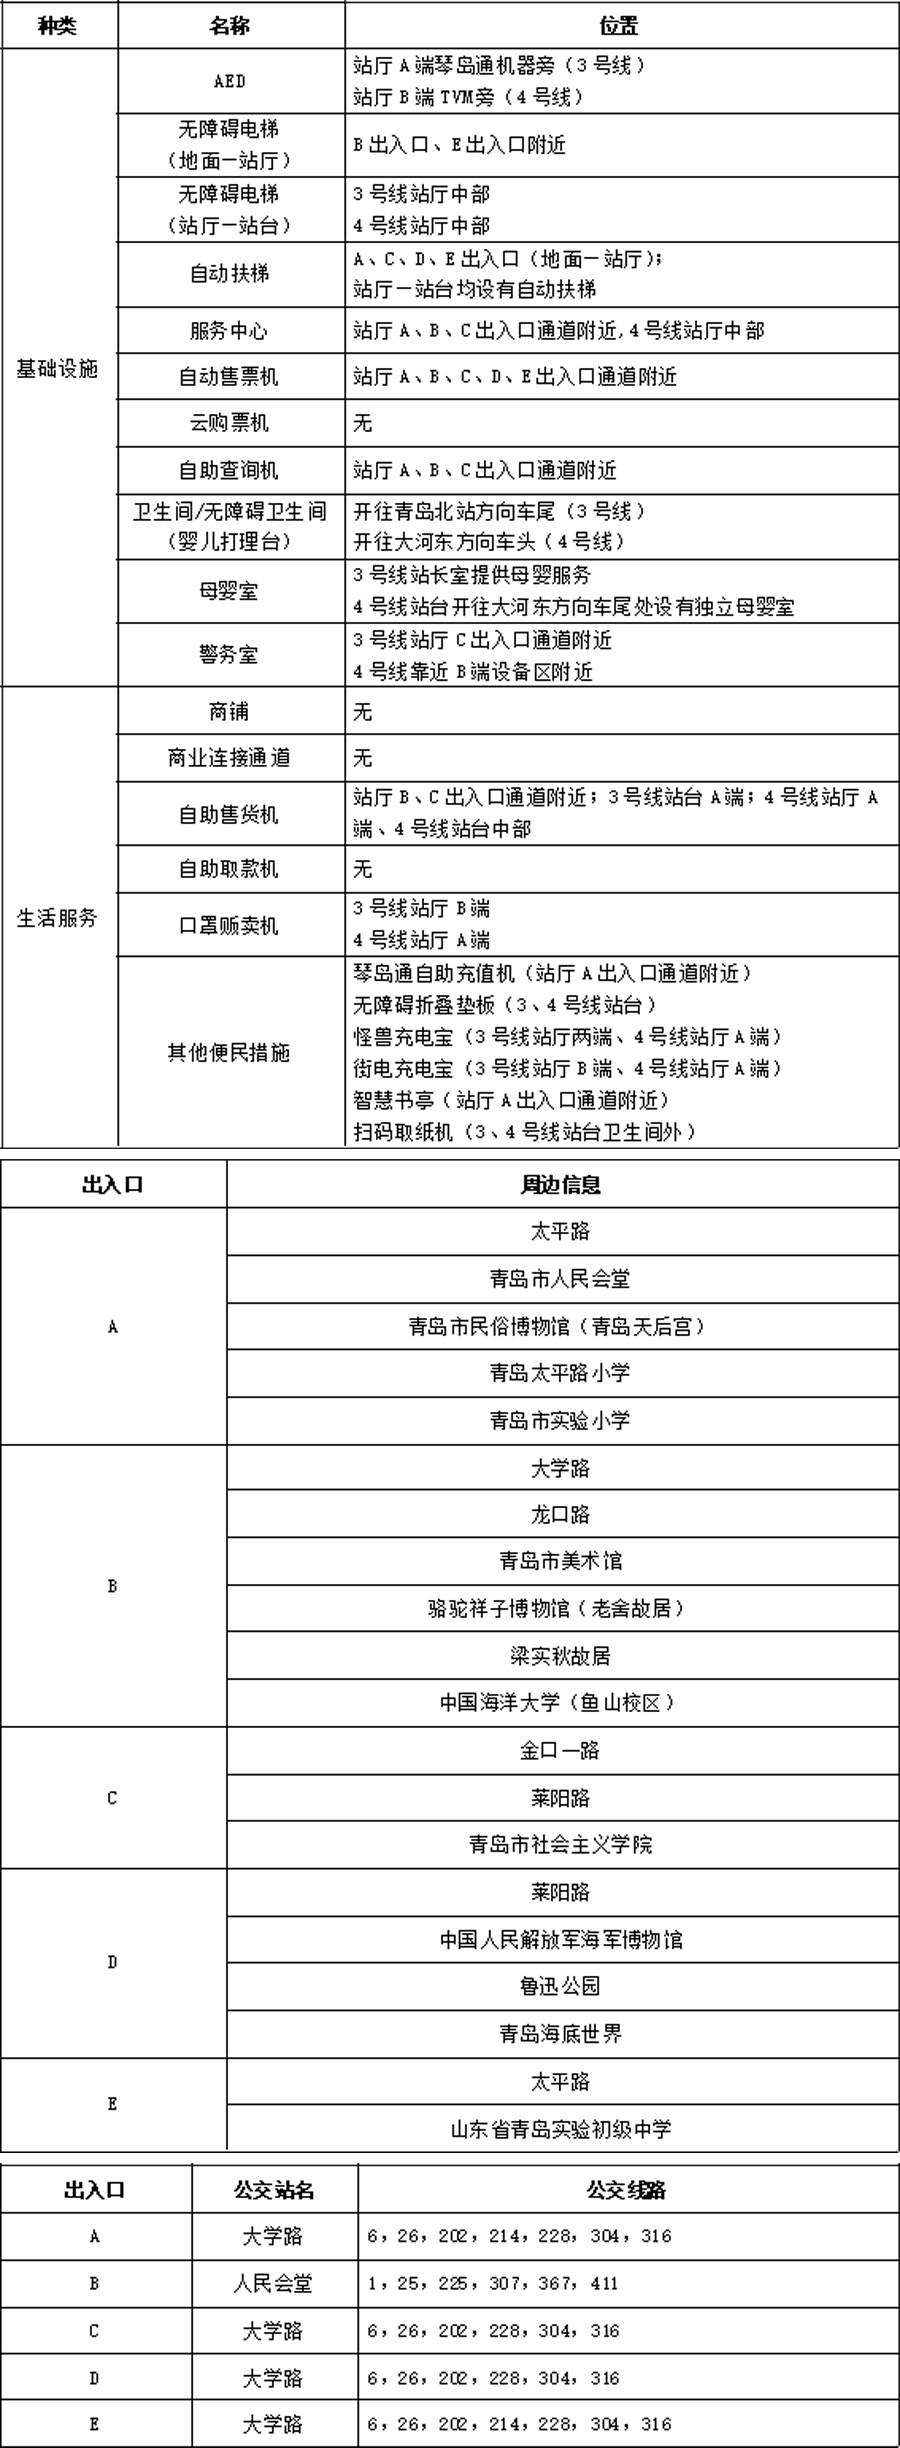 02人民会堂站周边信息统计表-2023.7.14 拷贝.jpg